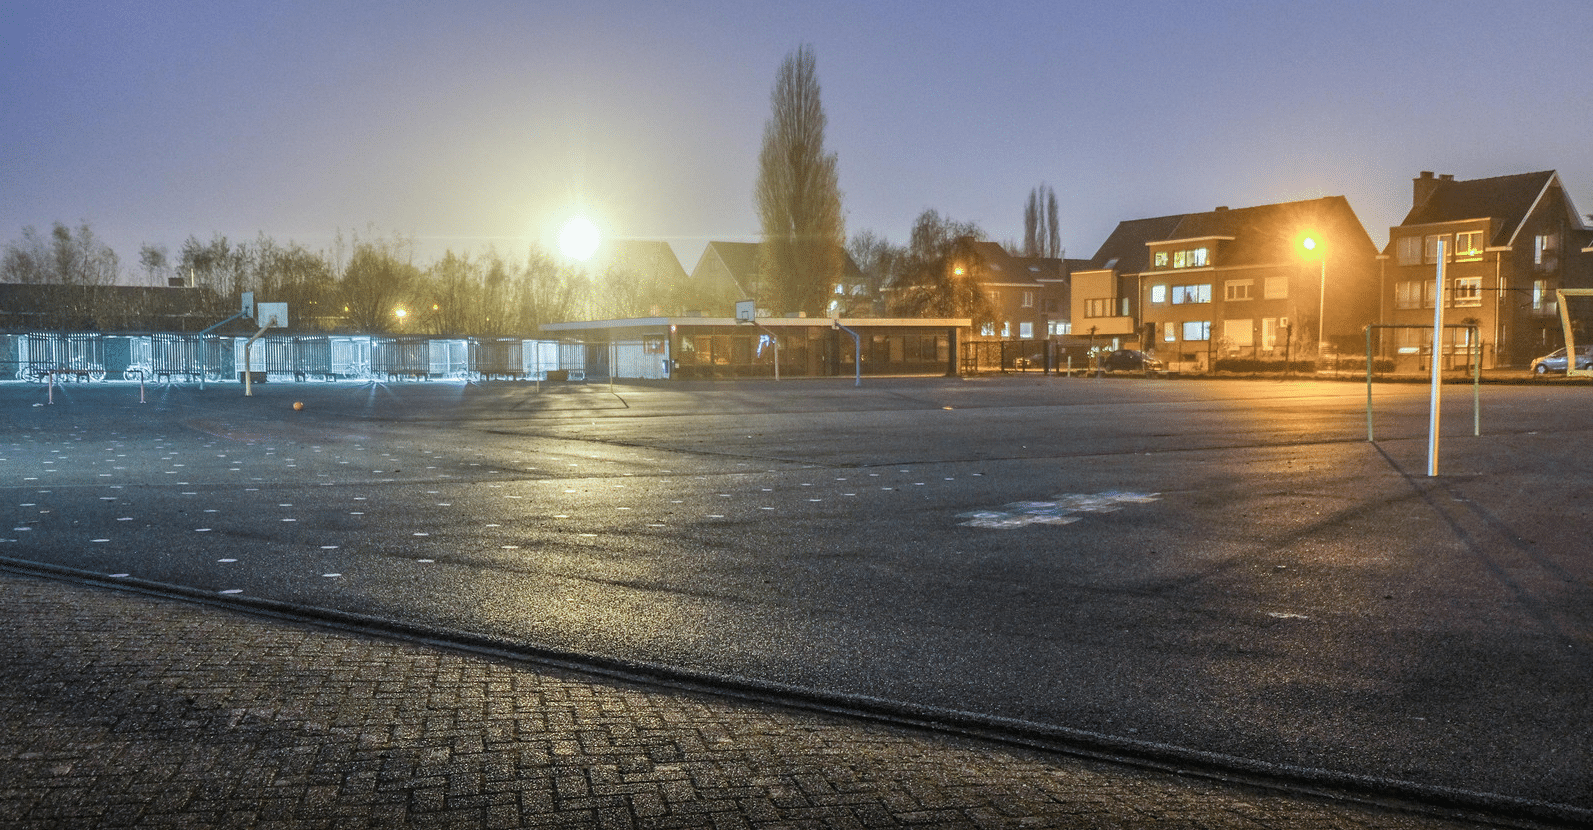 Oude situatie speelplaats St. Amandsbasisschool Kortrijk (Foto Henk Deleu)